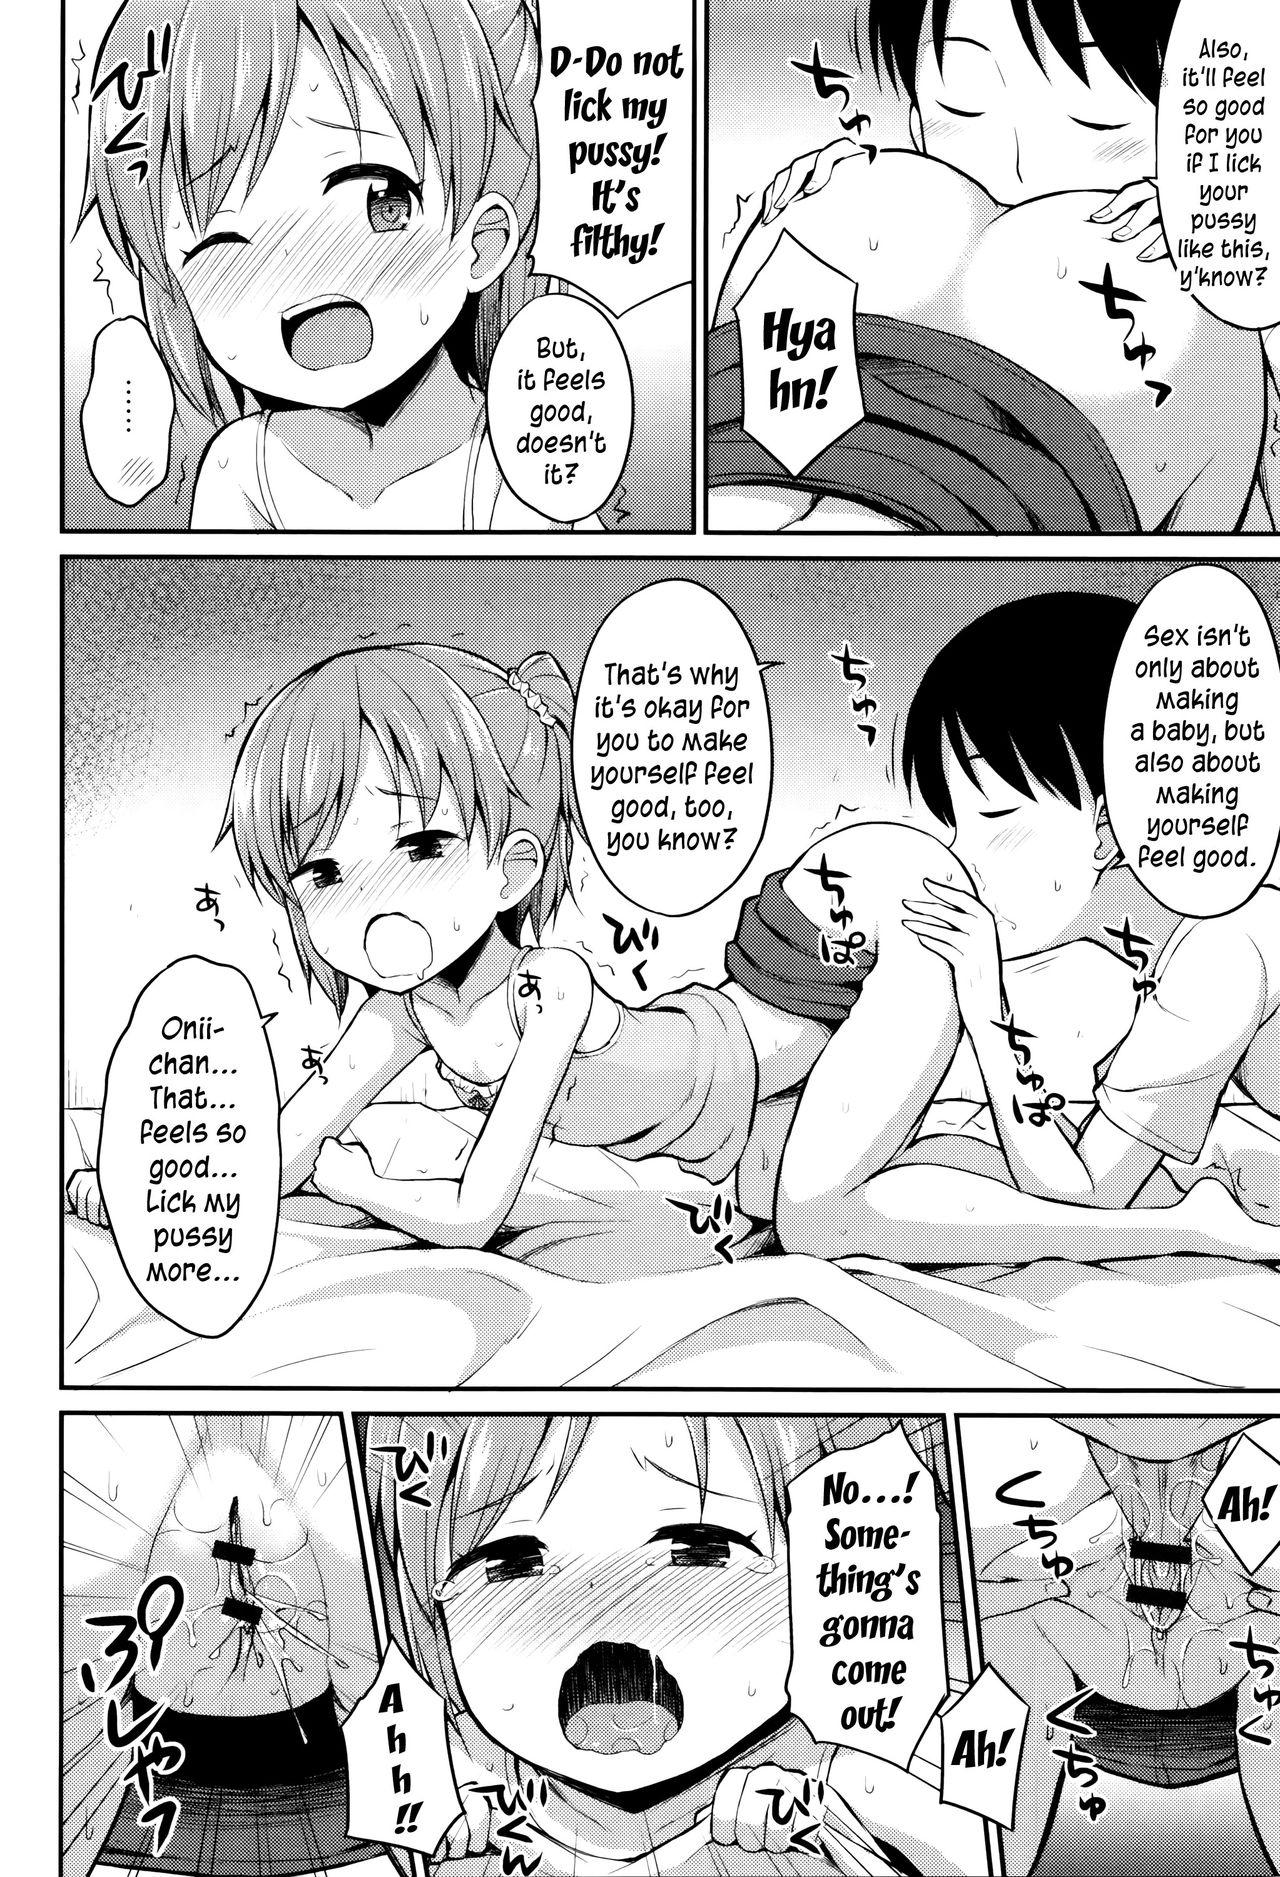 Stripping Onii-chan! Kodukurikkusushiyo? Cruising - Page 6